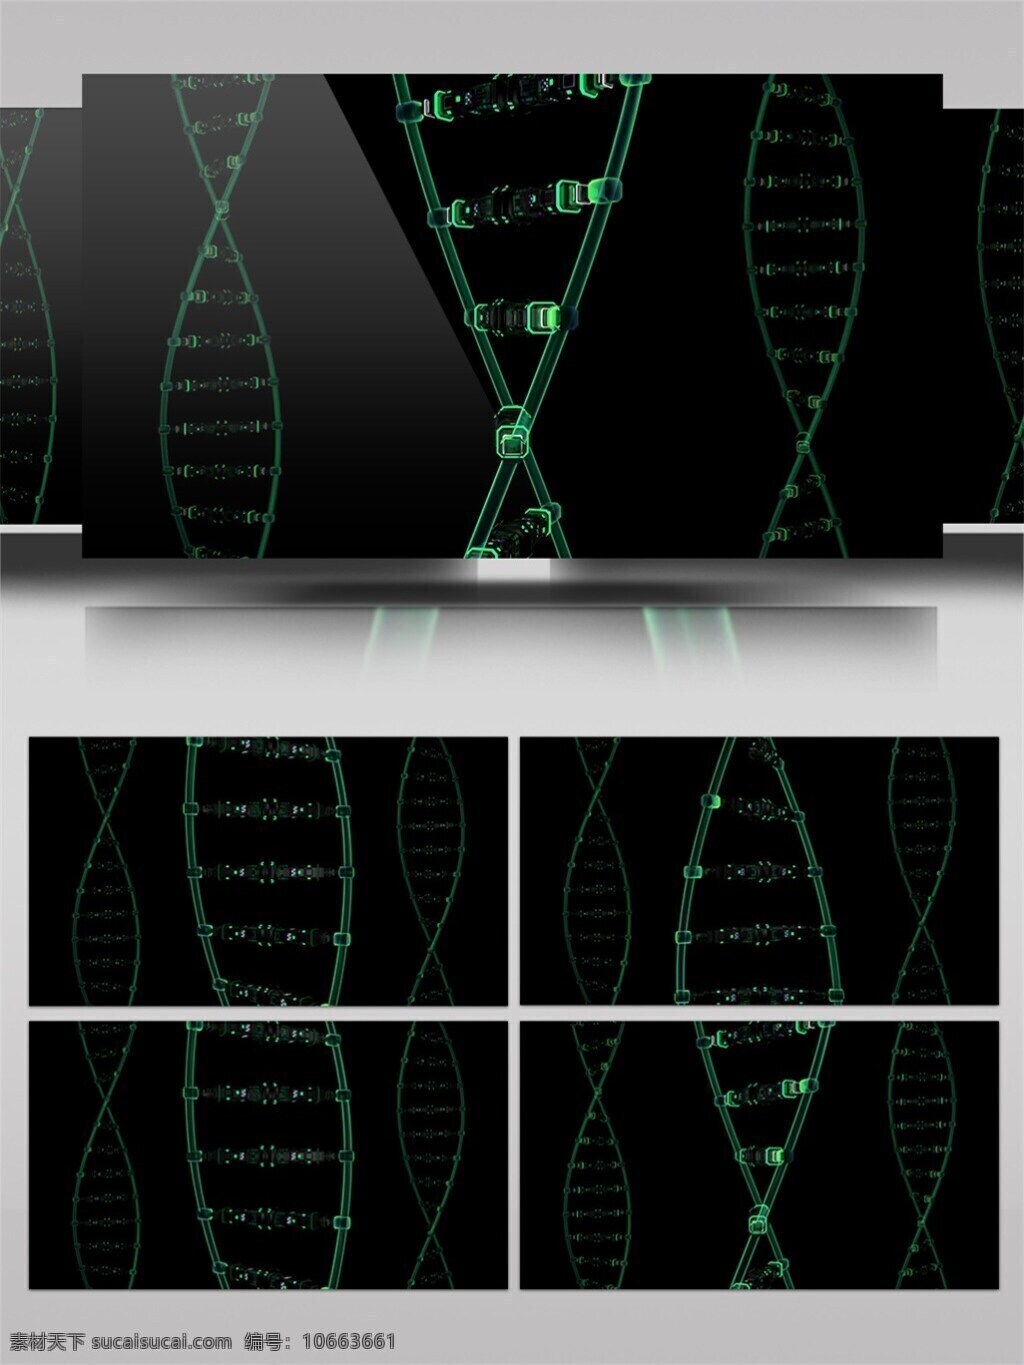 dna 双 螺旋体 结构 视频 医学影像 螺旋结构 vj线条 科技感 视频素材 动态视频素材